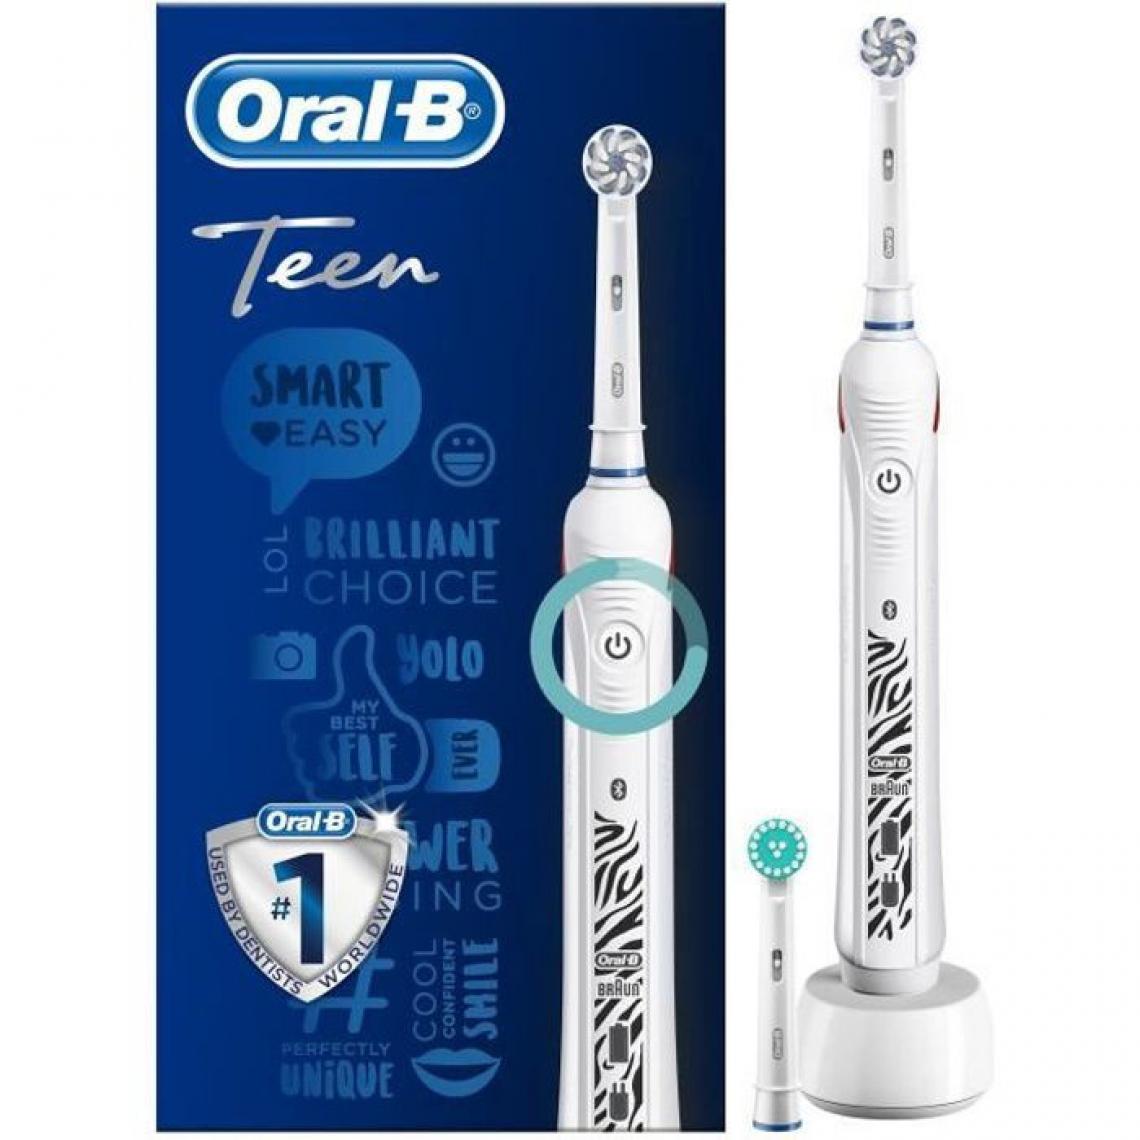 Oral-B - Oral-B Teen Brosse a Dents Électrique Rechargeable, 1 Manche, 1 Brossette, Technologie 3D, Élimine jusqu'a 100 % plaque dentai - Brosse à dents électrique